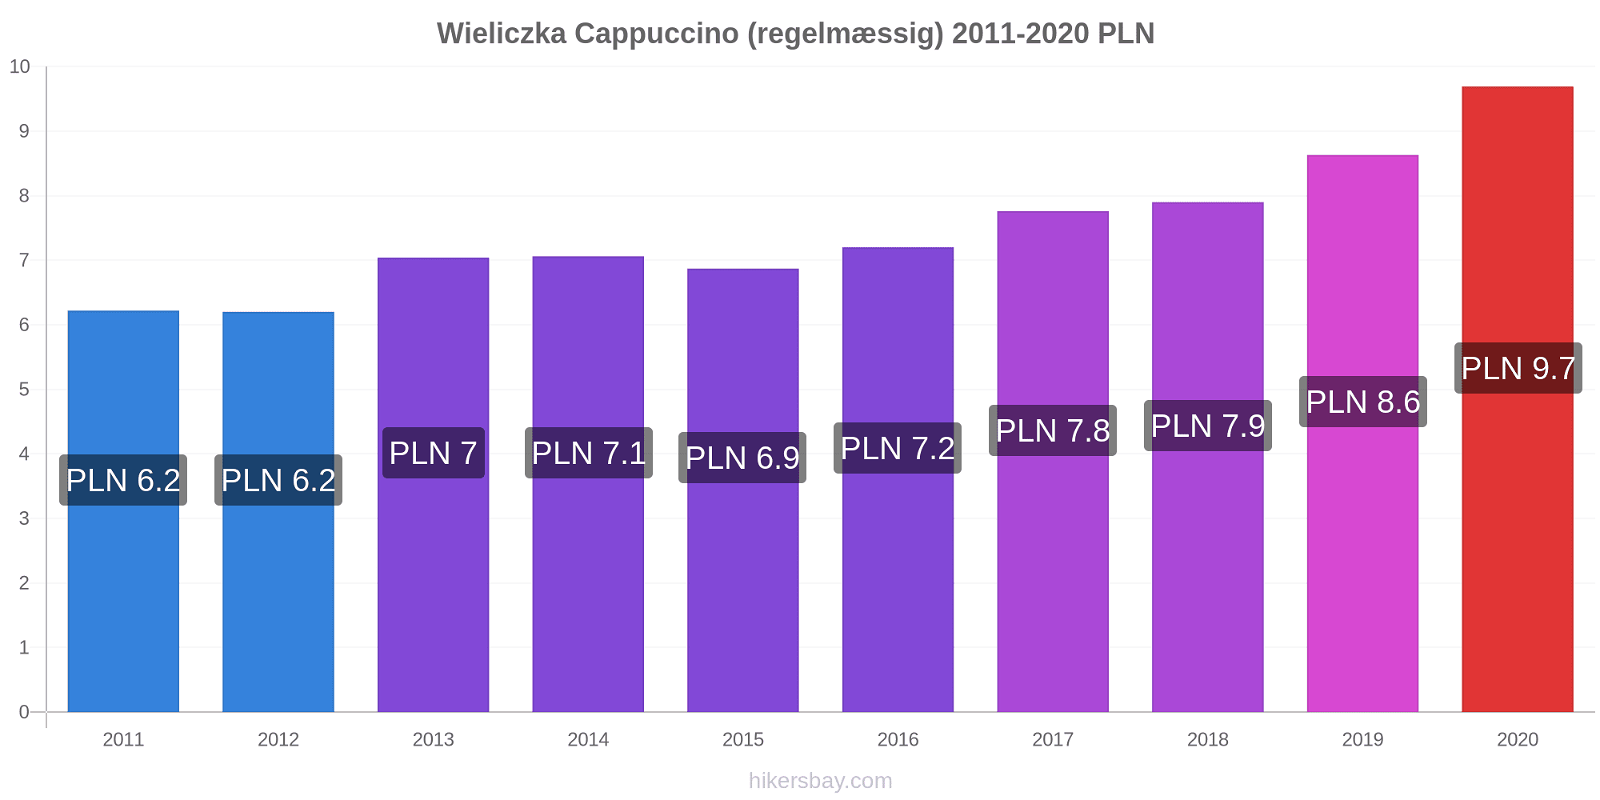 Wieliczka prisændringer Cappuccino (regelmæssig) hikersbay.com